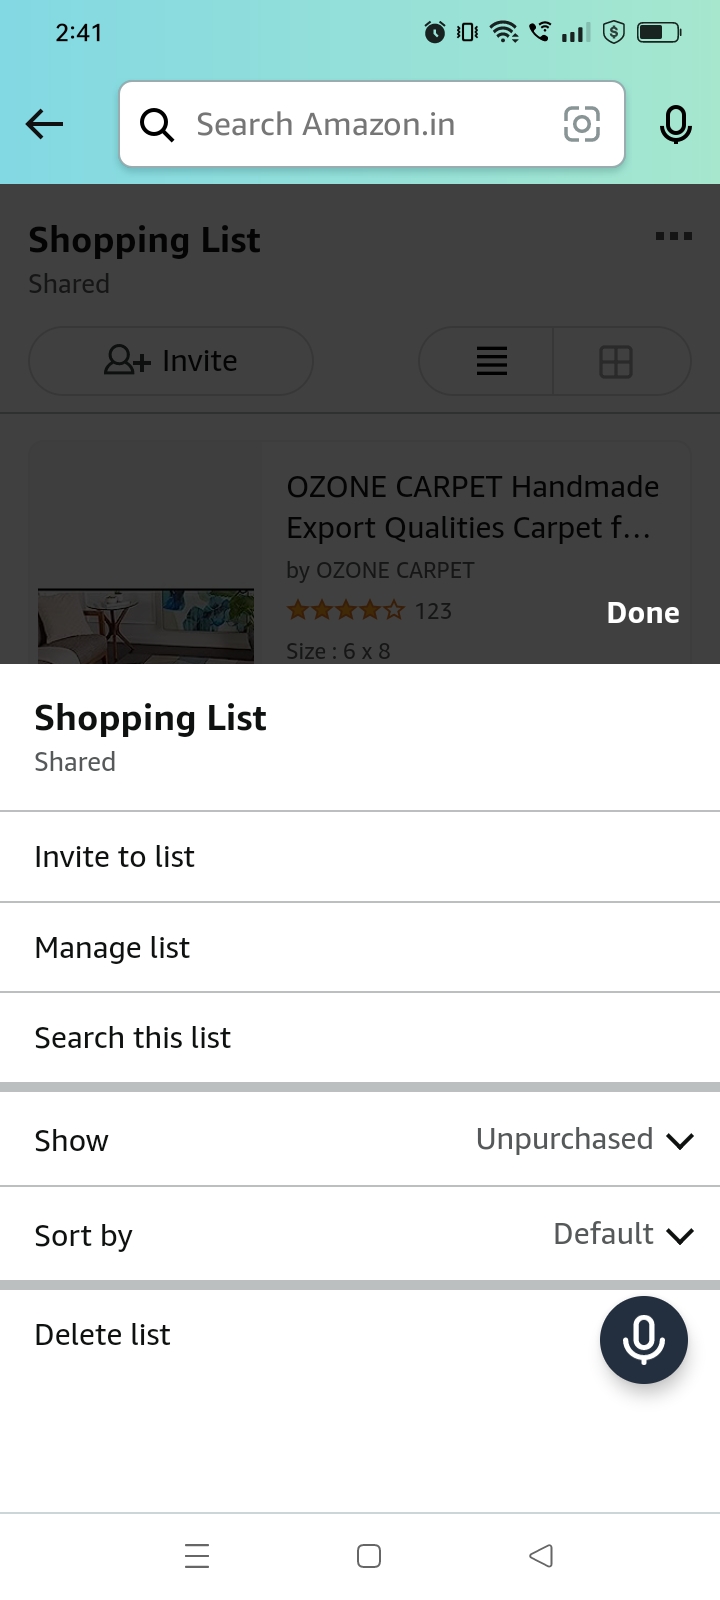 Amazon Manage list option